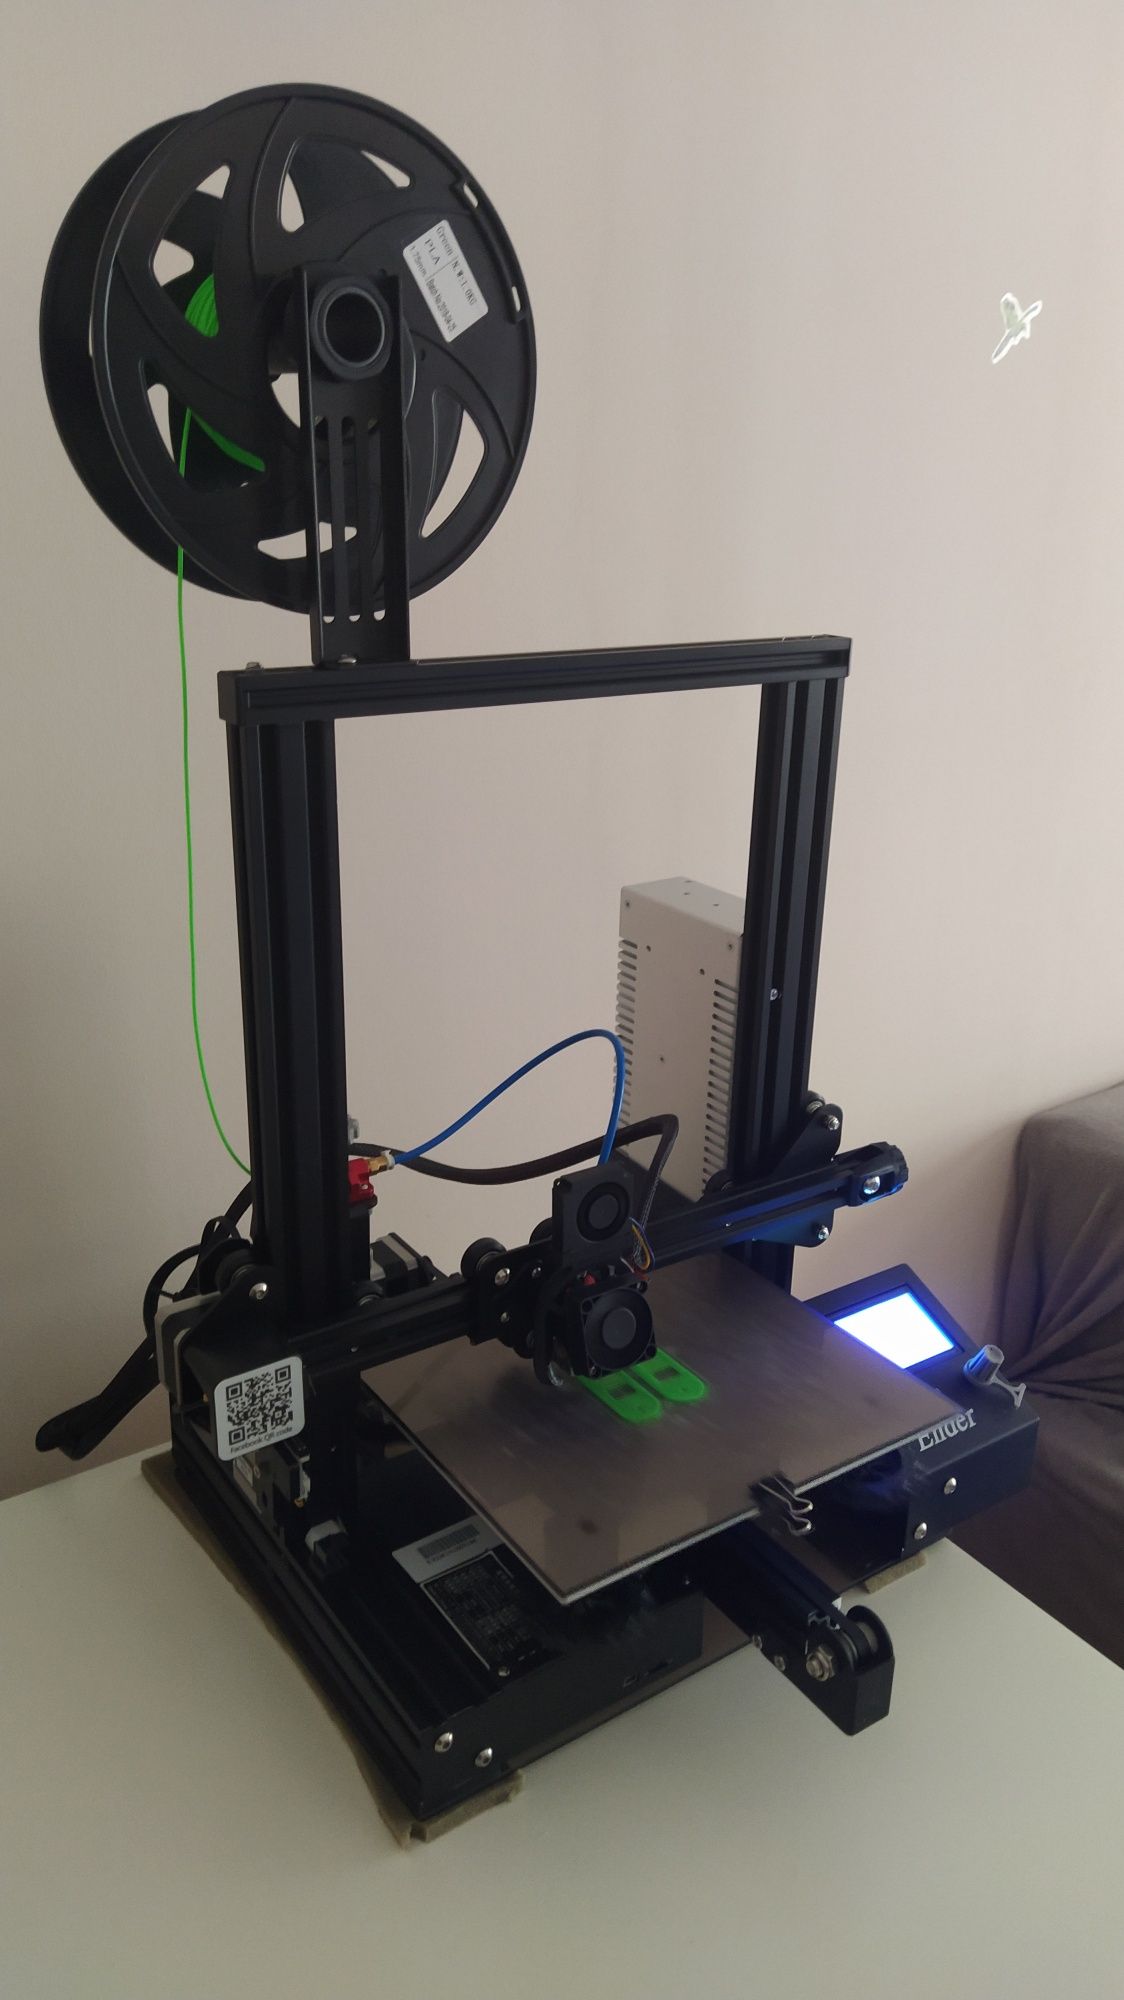 Imprimanta 3d Creality Ender 3 si 2 role de filament PLA